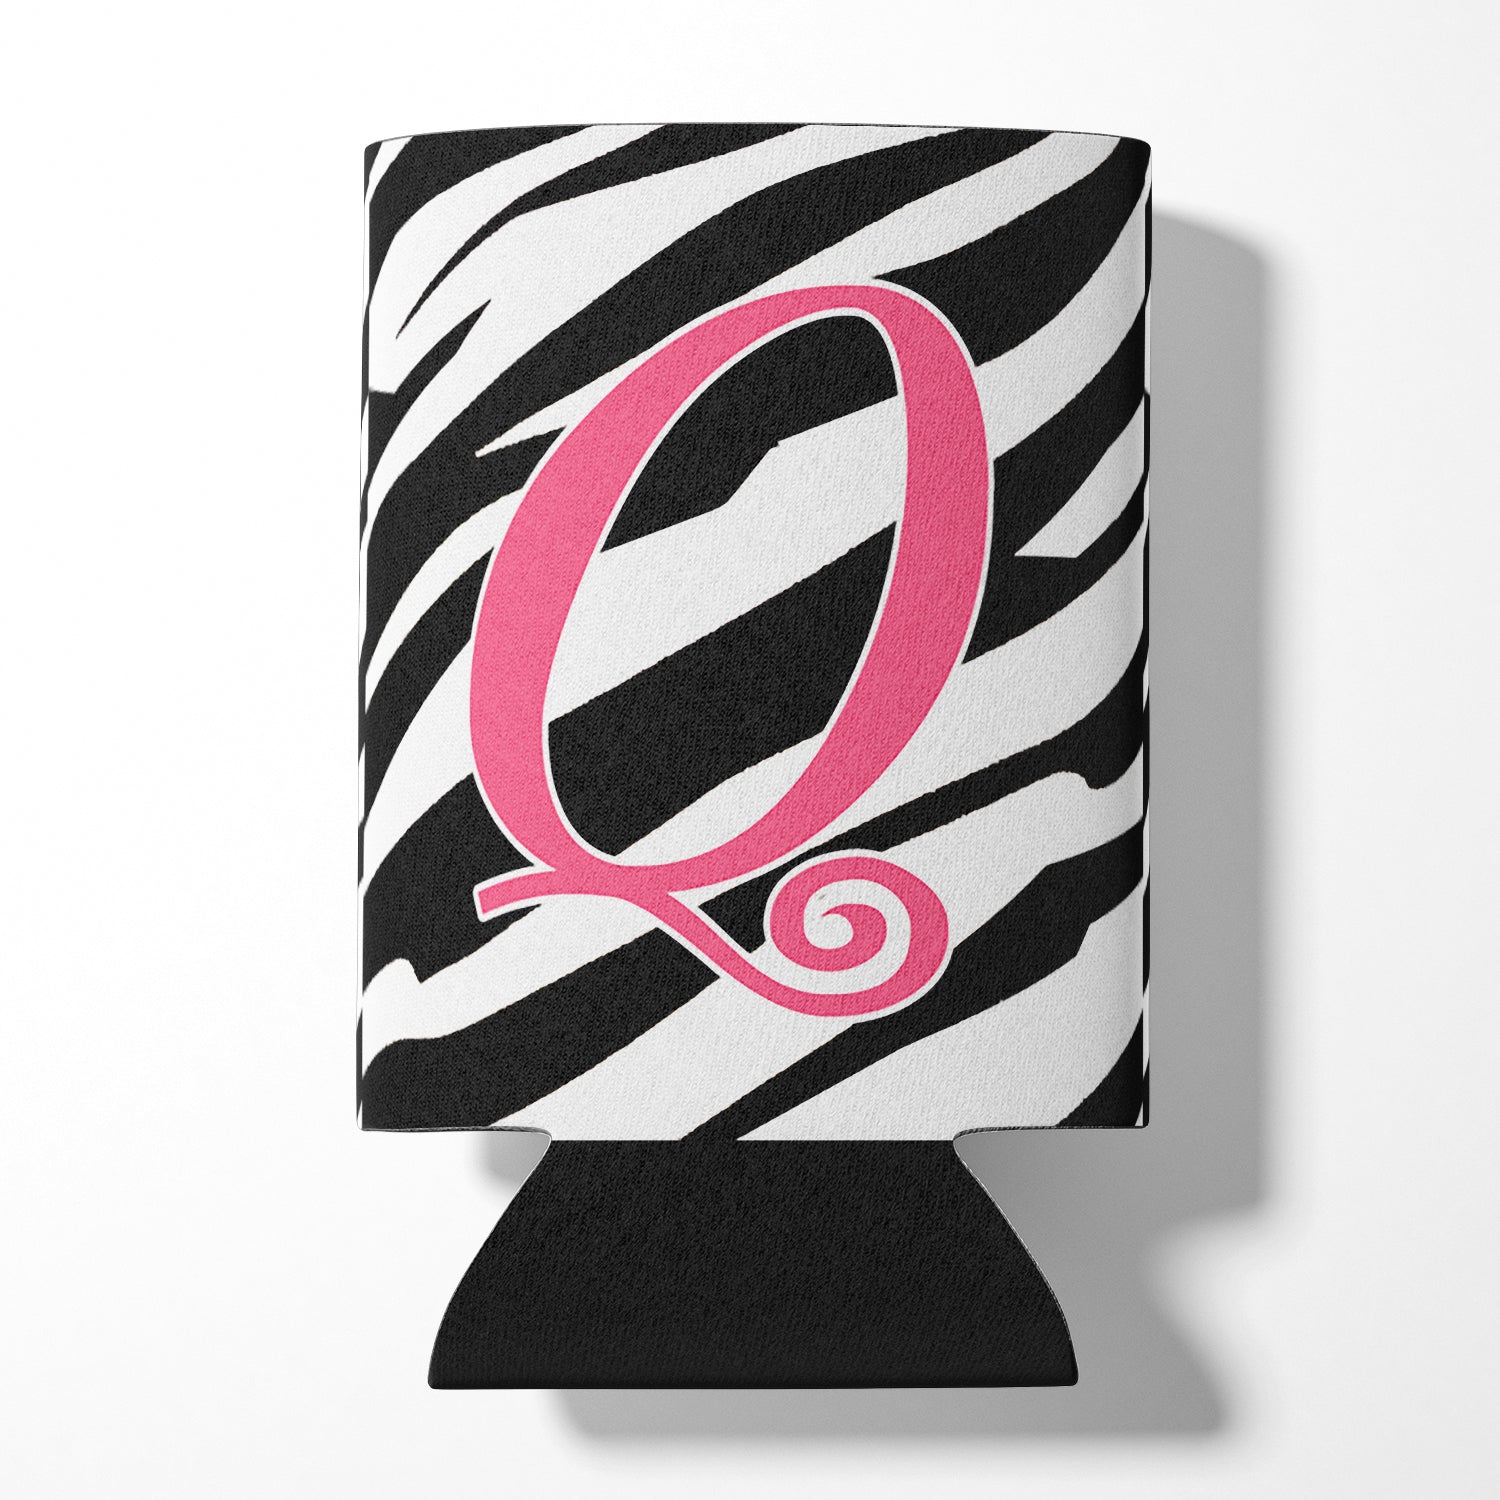 Lettre Q monogramme initial - Zebra Stripe et Pink Can ou Bottle Beverage Insulator Hugger